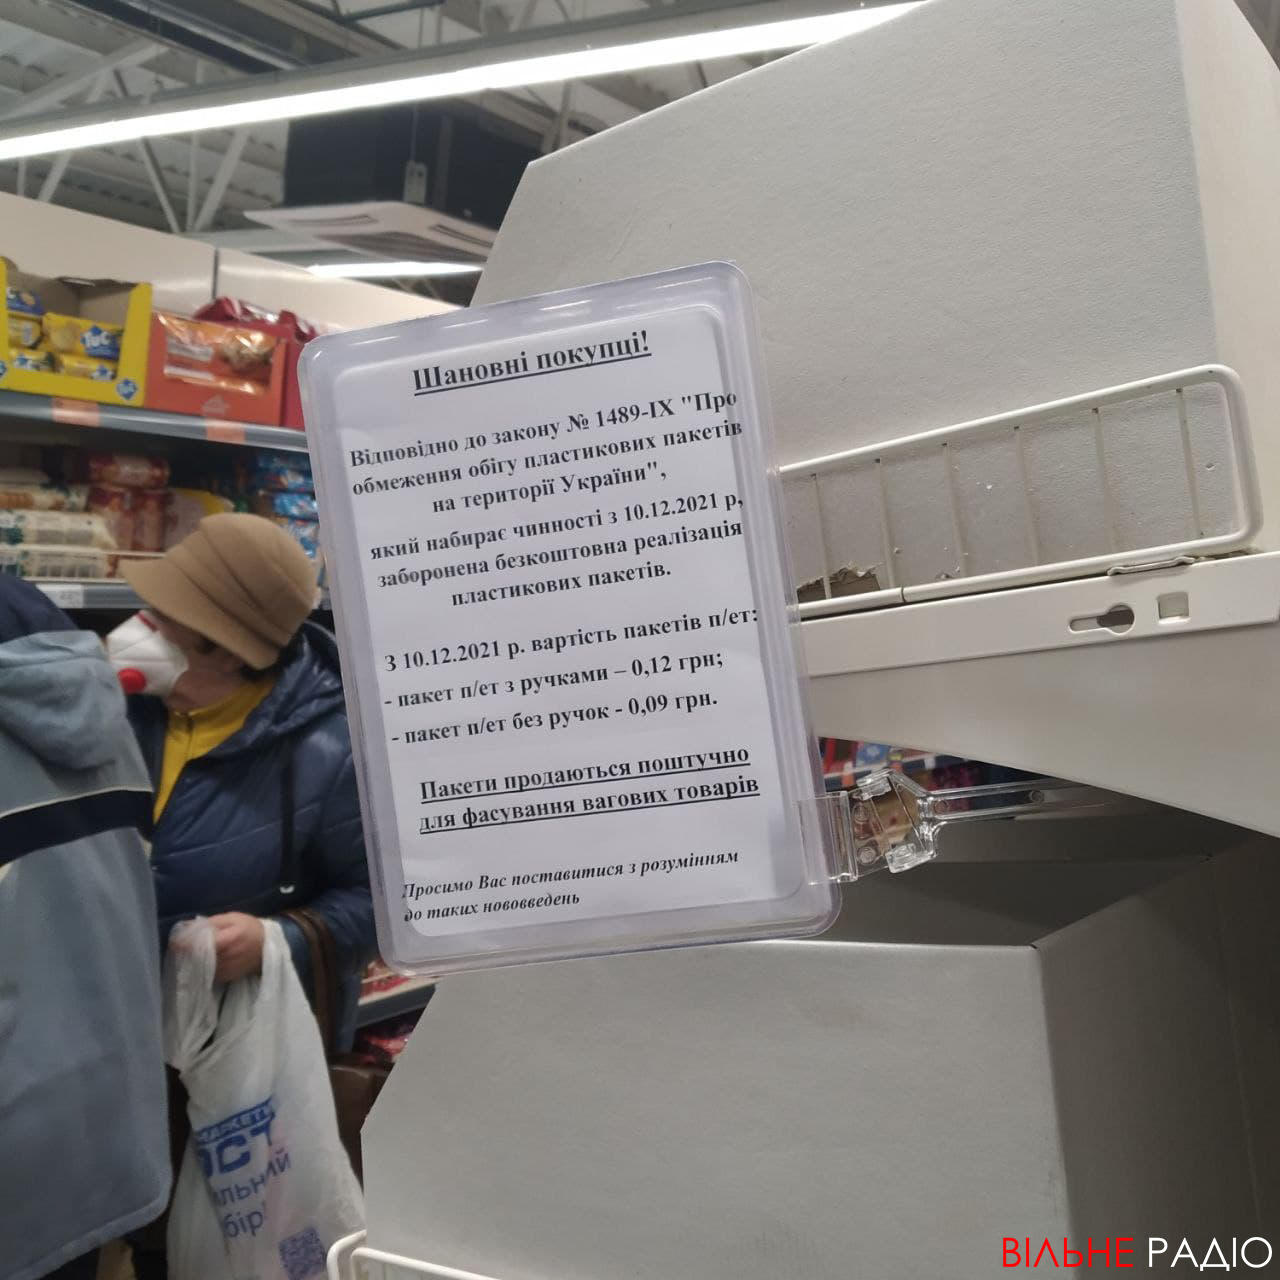 Сколько стоят "бесплатные" фасовочные пакеты в бахмутских супермаркетах